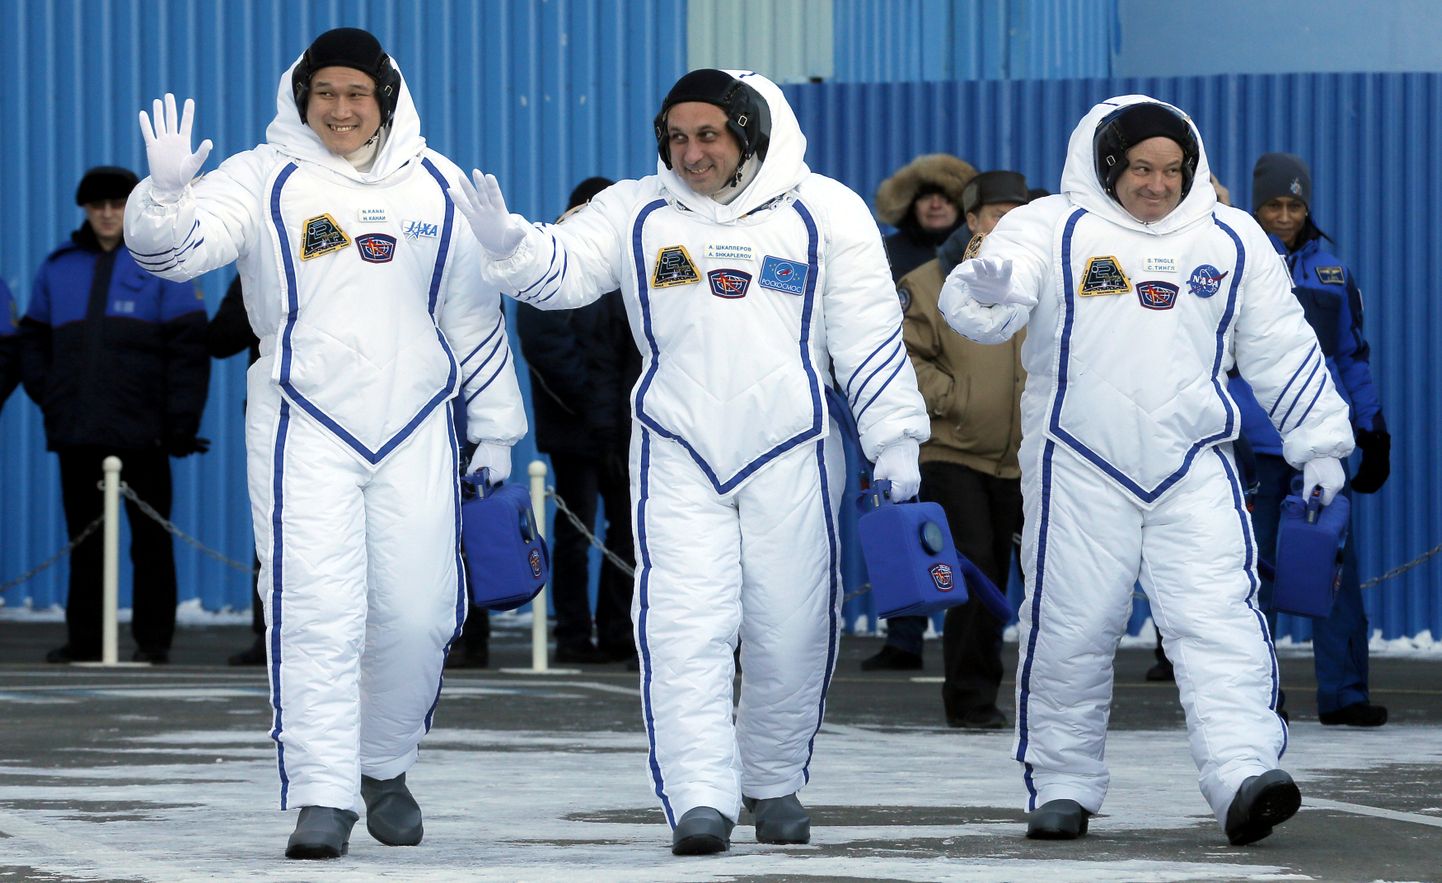 Jaapani astronaut Norishige Kanai koos rahvusvahelise kosmosejaama ekspeditsiooni meeskonnaga ärasaatmistseremoonial 17. detsembril.